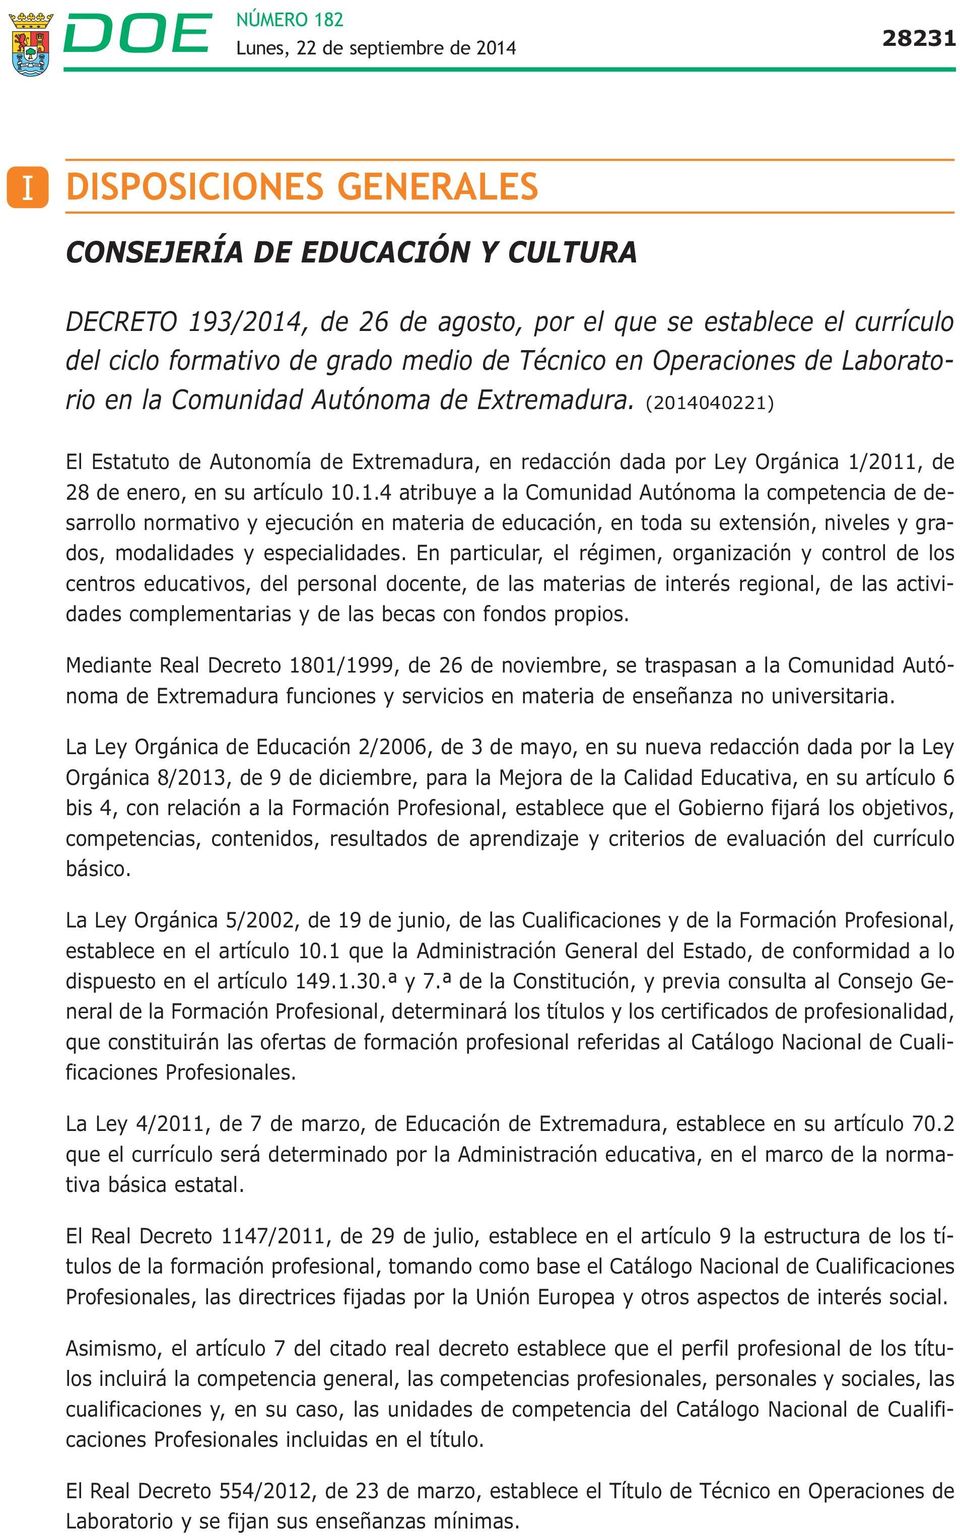 040221) El Estatuto de Autonomía de Extremadura, en redacción dada por Ley Orgánica 1/2011, de 28 de enero, en su artículo 10.1.4 atribuye a la Comunidad Autónoma la competencia de desarrollo normativo y ejecución en materia de educación, en toda su extensión, niveles y grados, modalidades y especialidades.